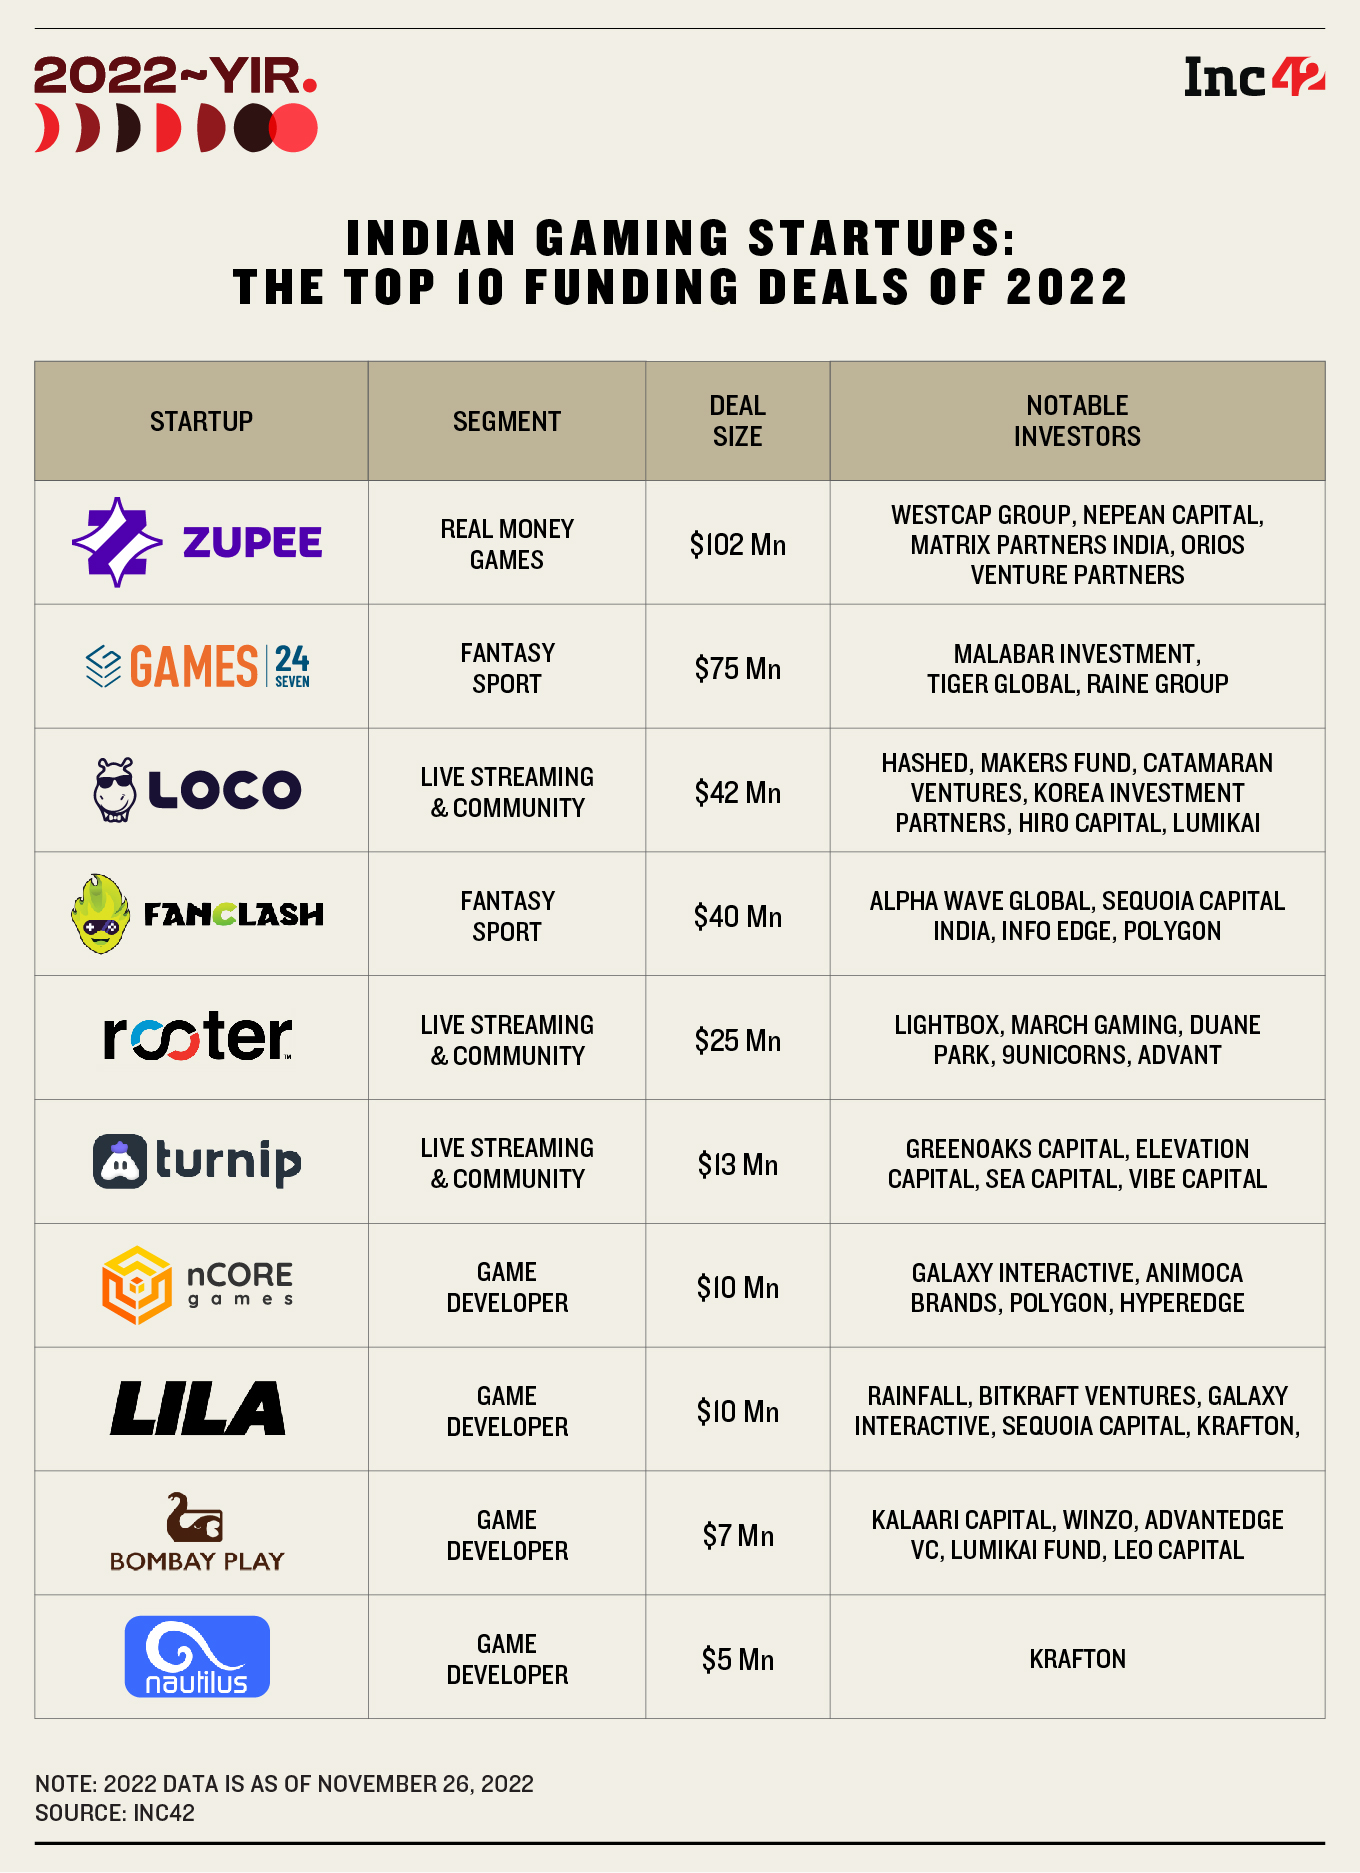 Top Deals Of 2022